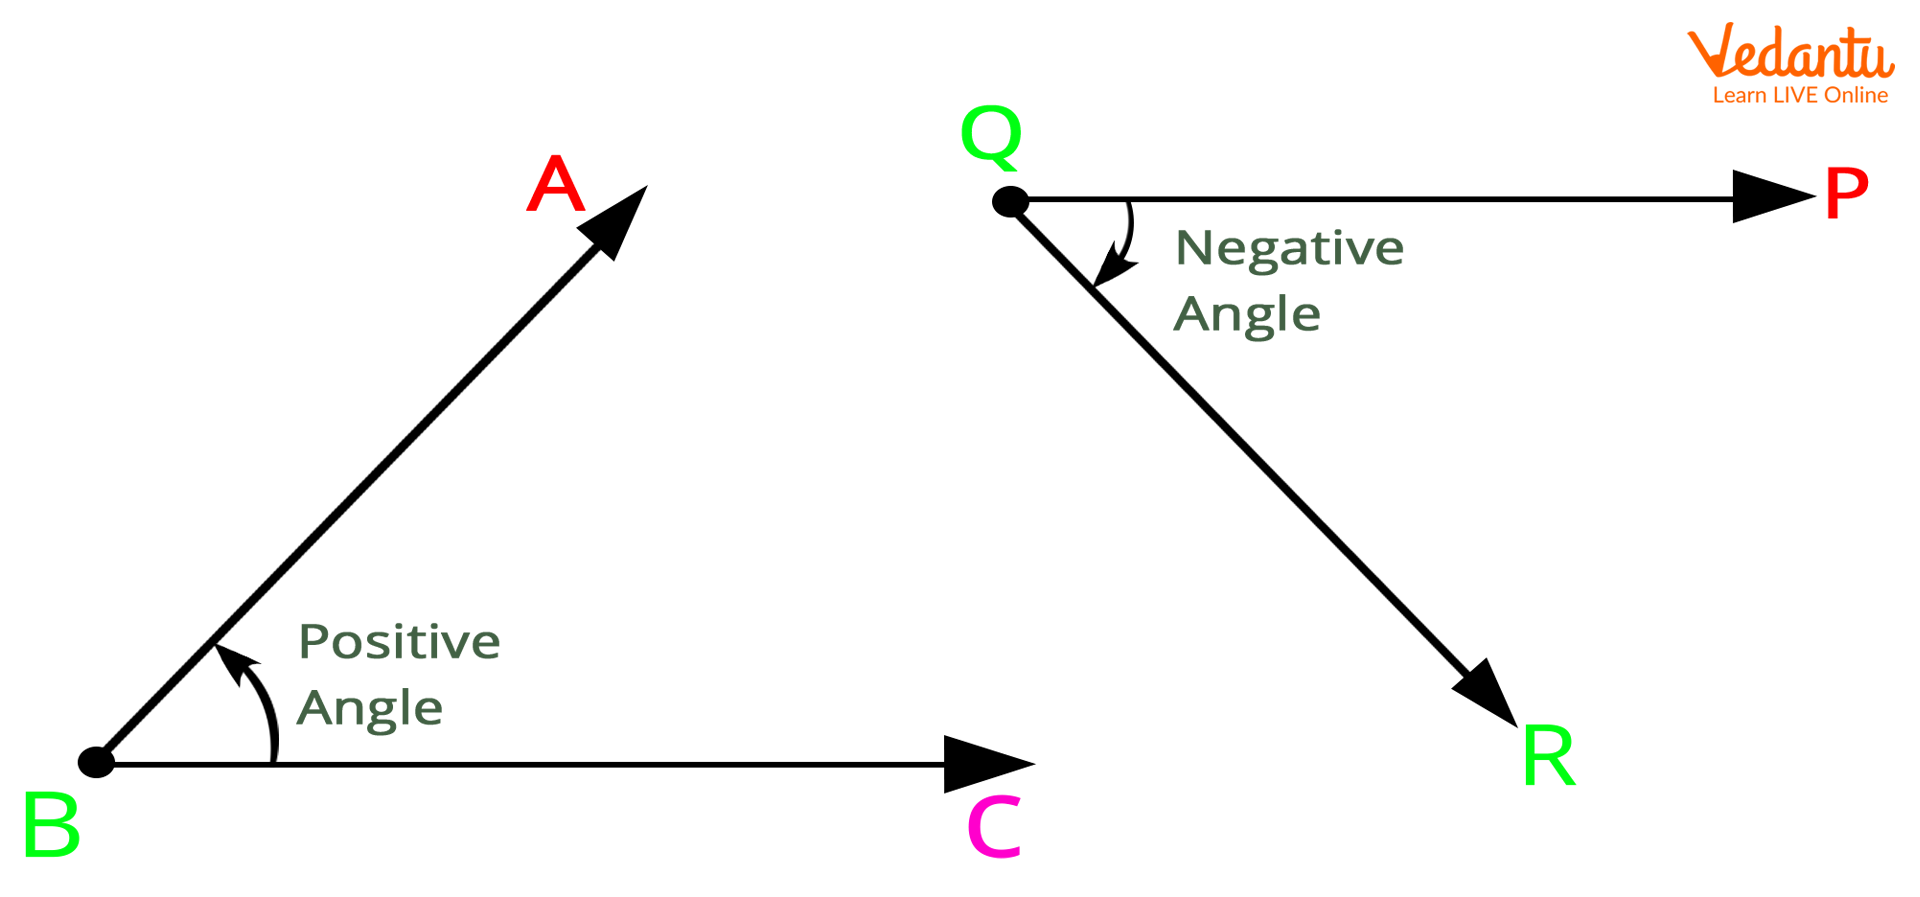 Positive angle and negative angle